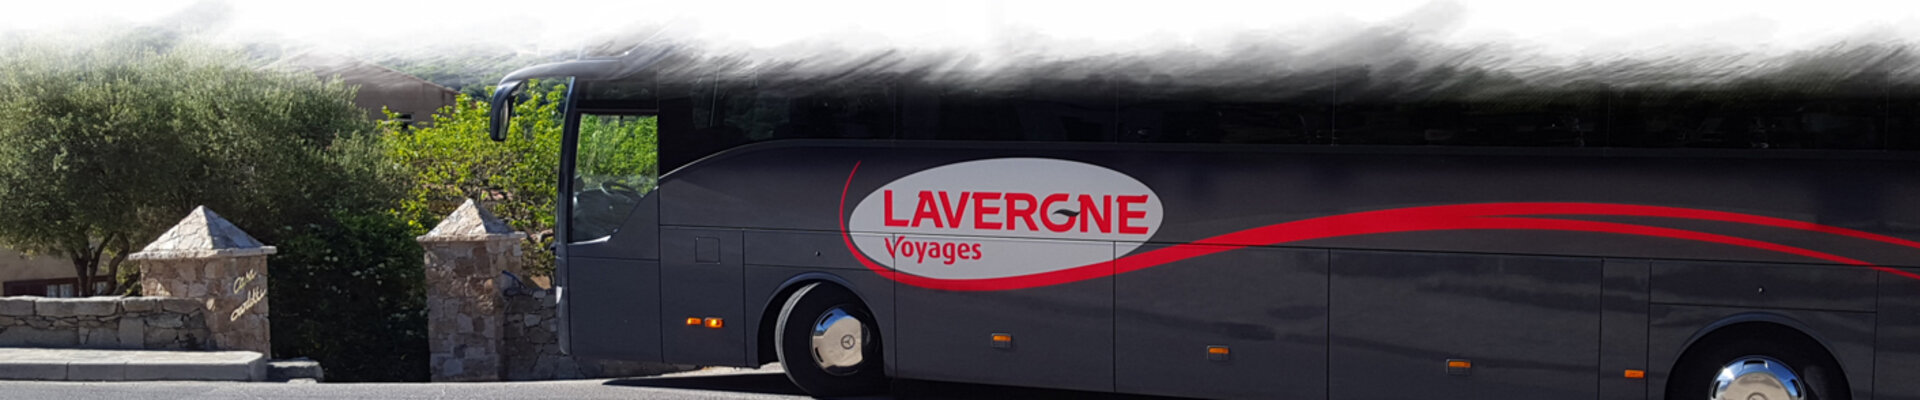 Lavergne Autocars Voyage Autocars - Cantal